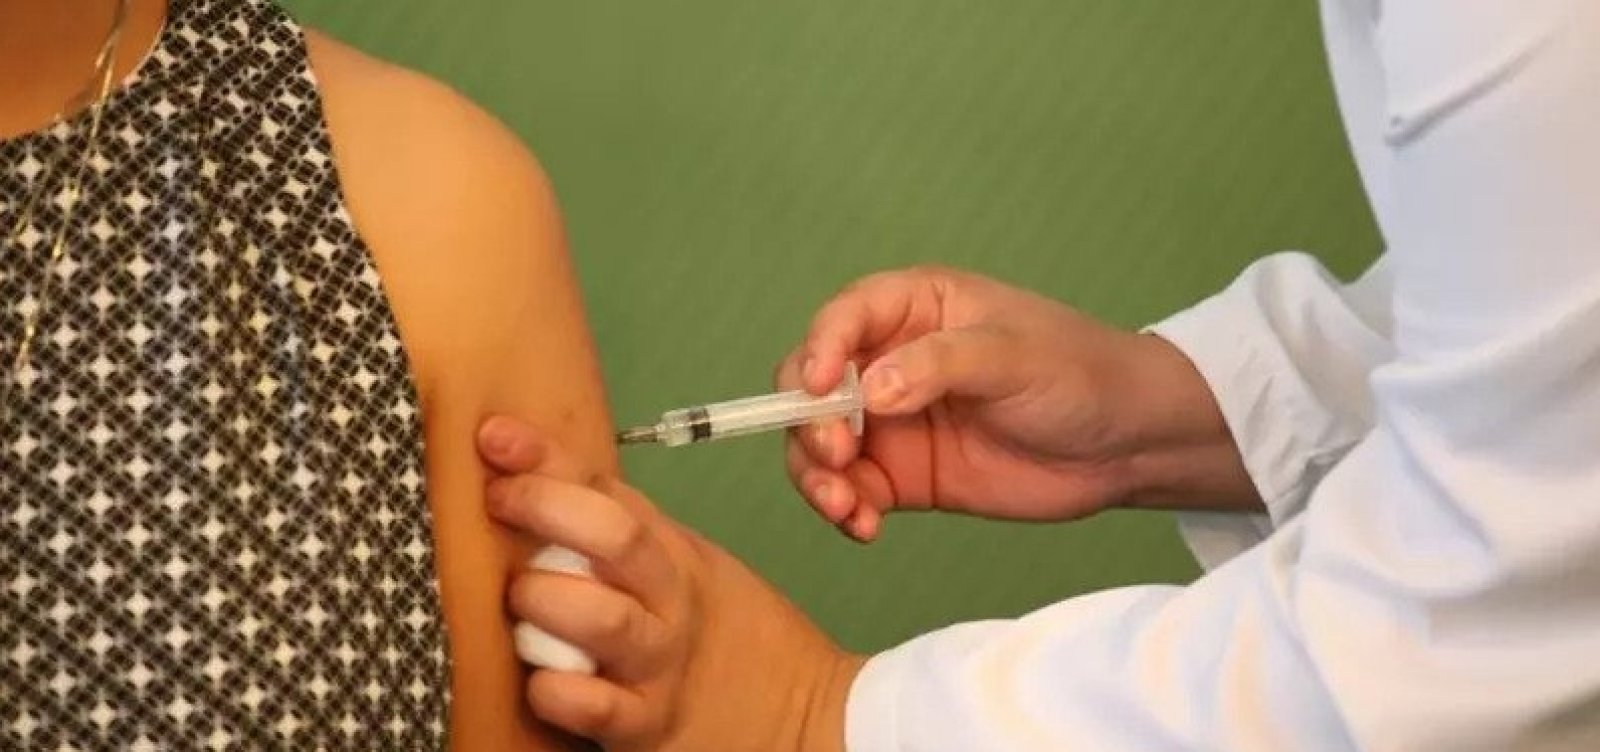 Empresas esperam autorização do governo para compra de 33 milhões de vacinas de Oxford